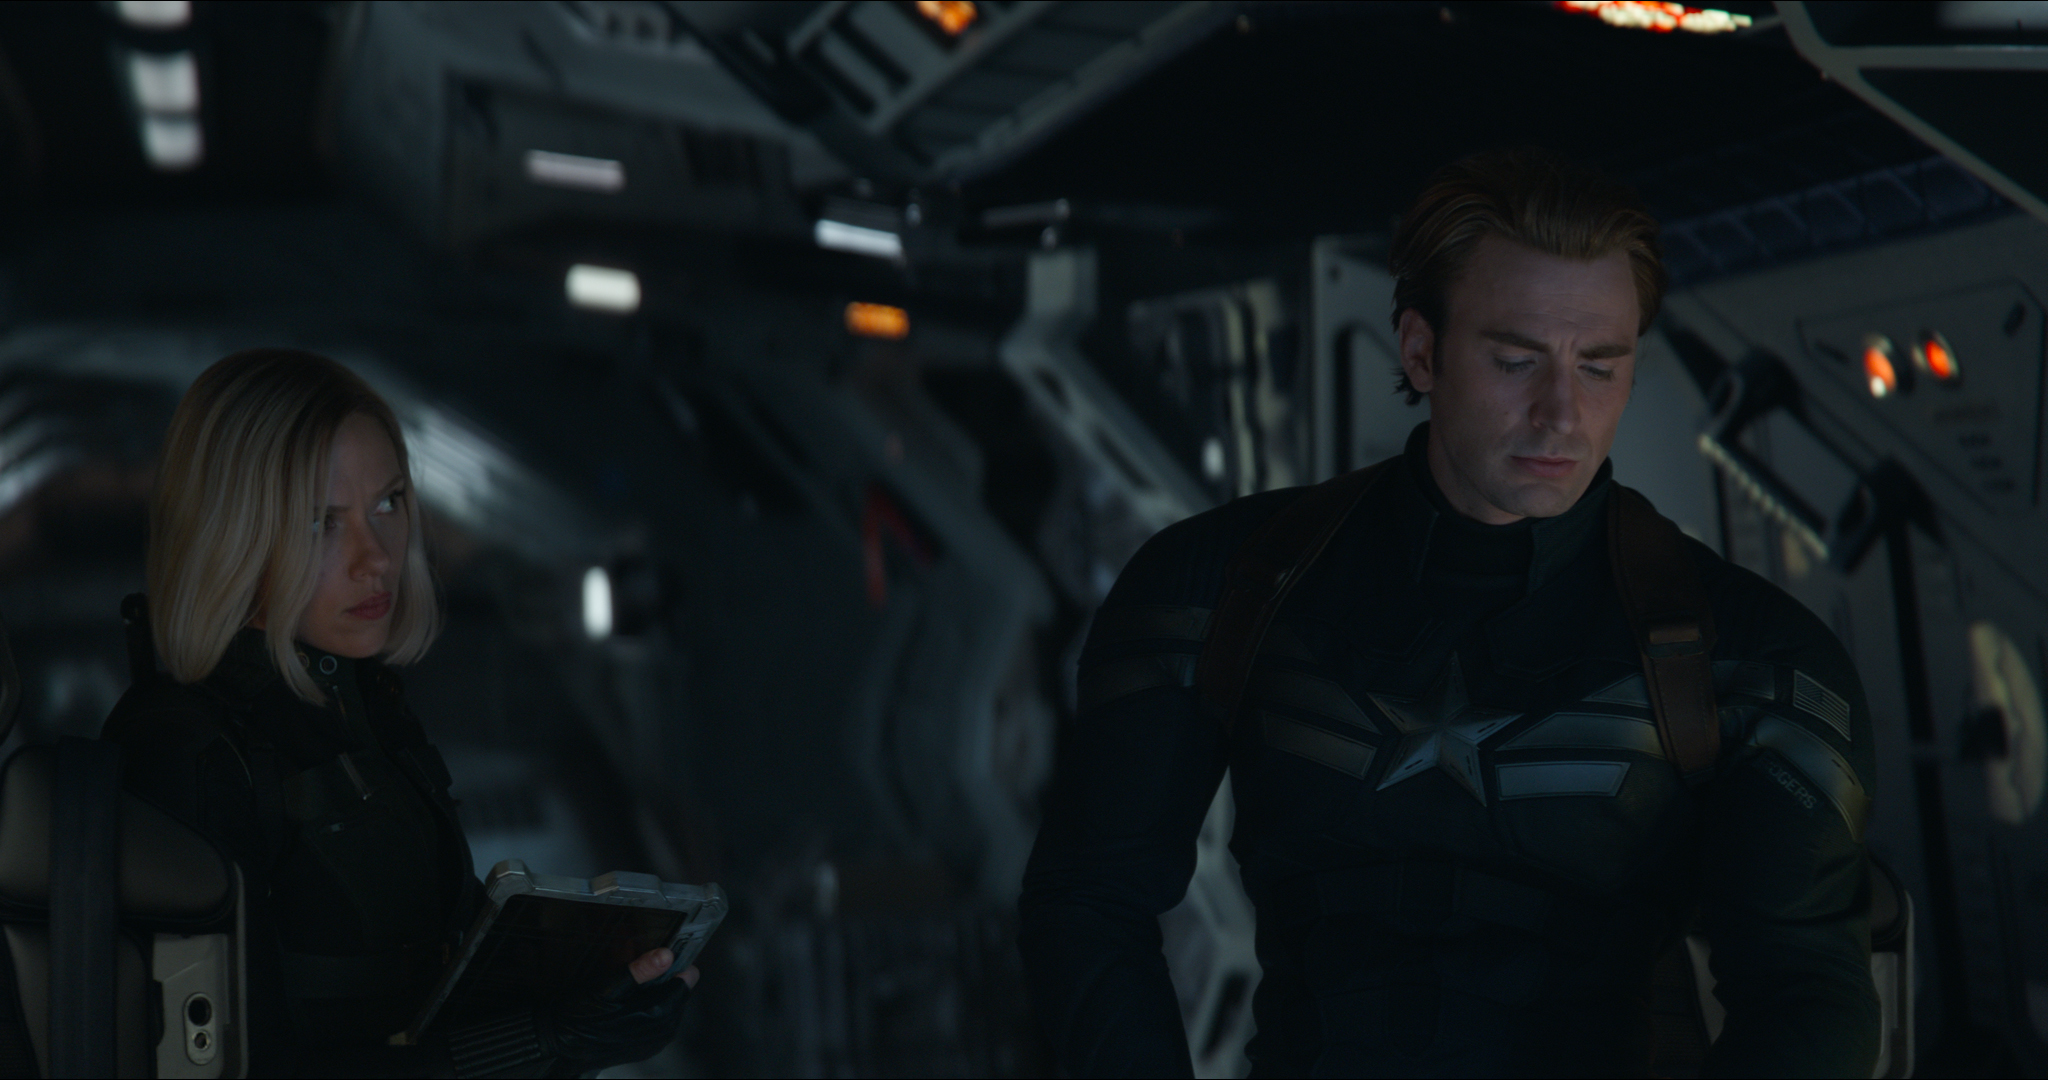 Still from 'Avengers: Endgame' featuring Black Widow/Natasha Romanoff (Scarlett Johansson) and Captain America/Steve Rogers (Chris Evans). (Film Frame—Marvel Studios 2019)